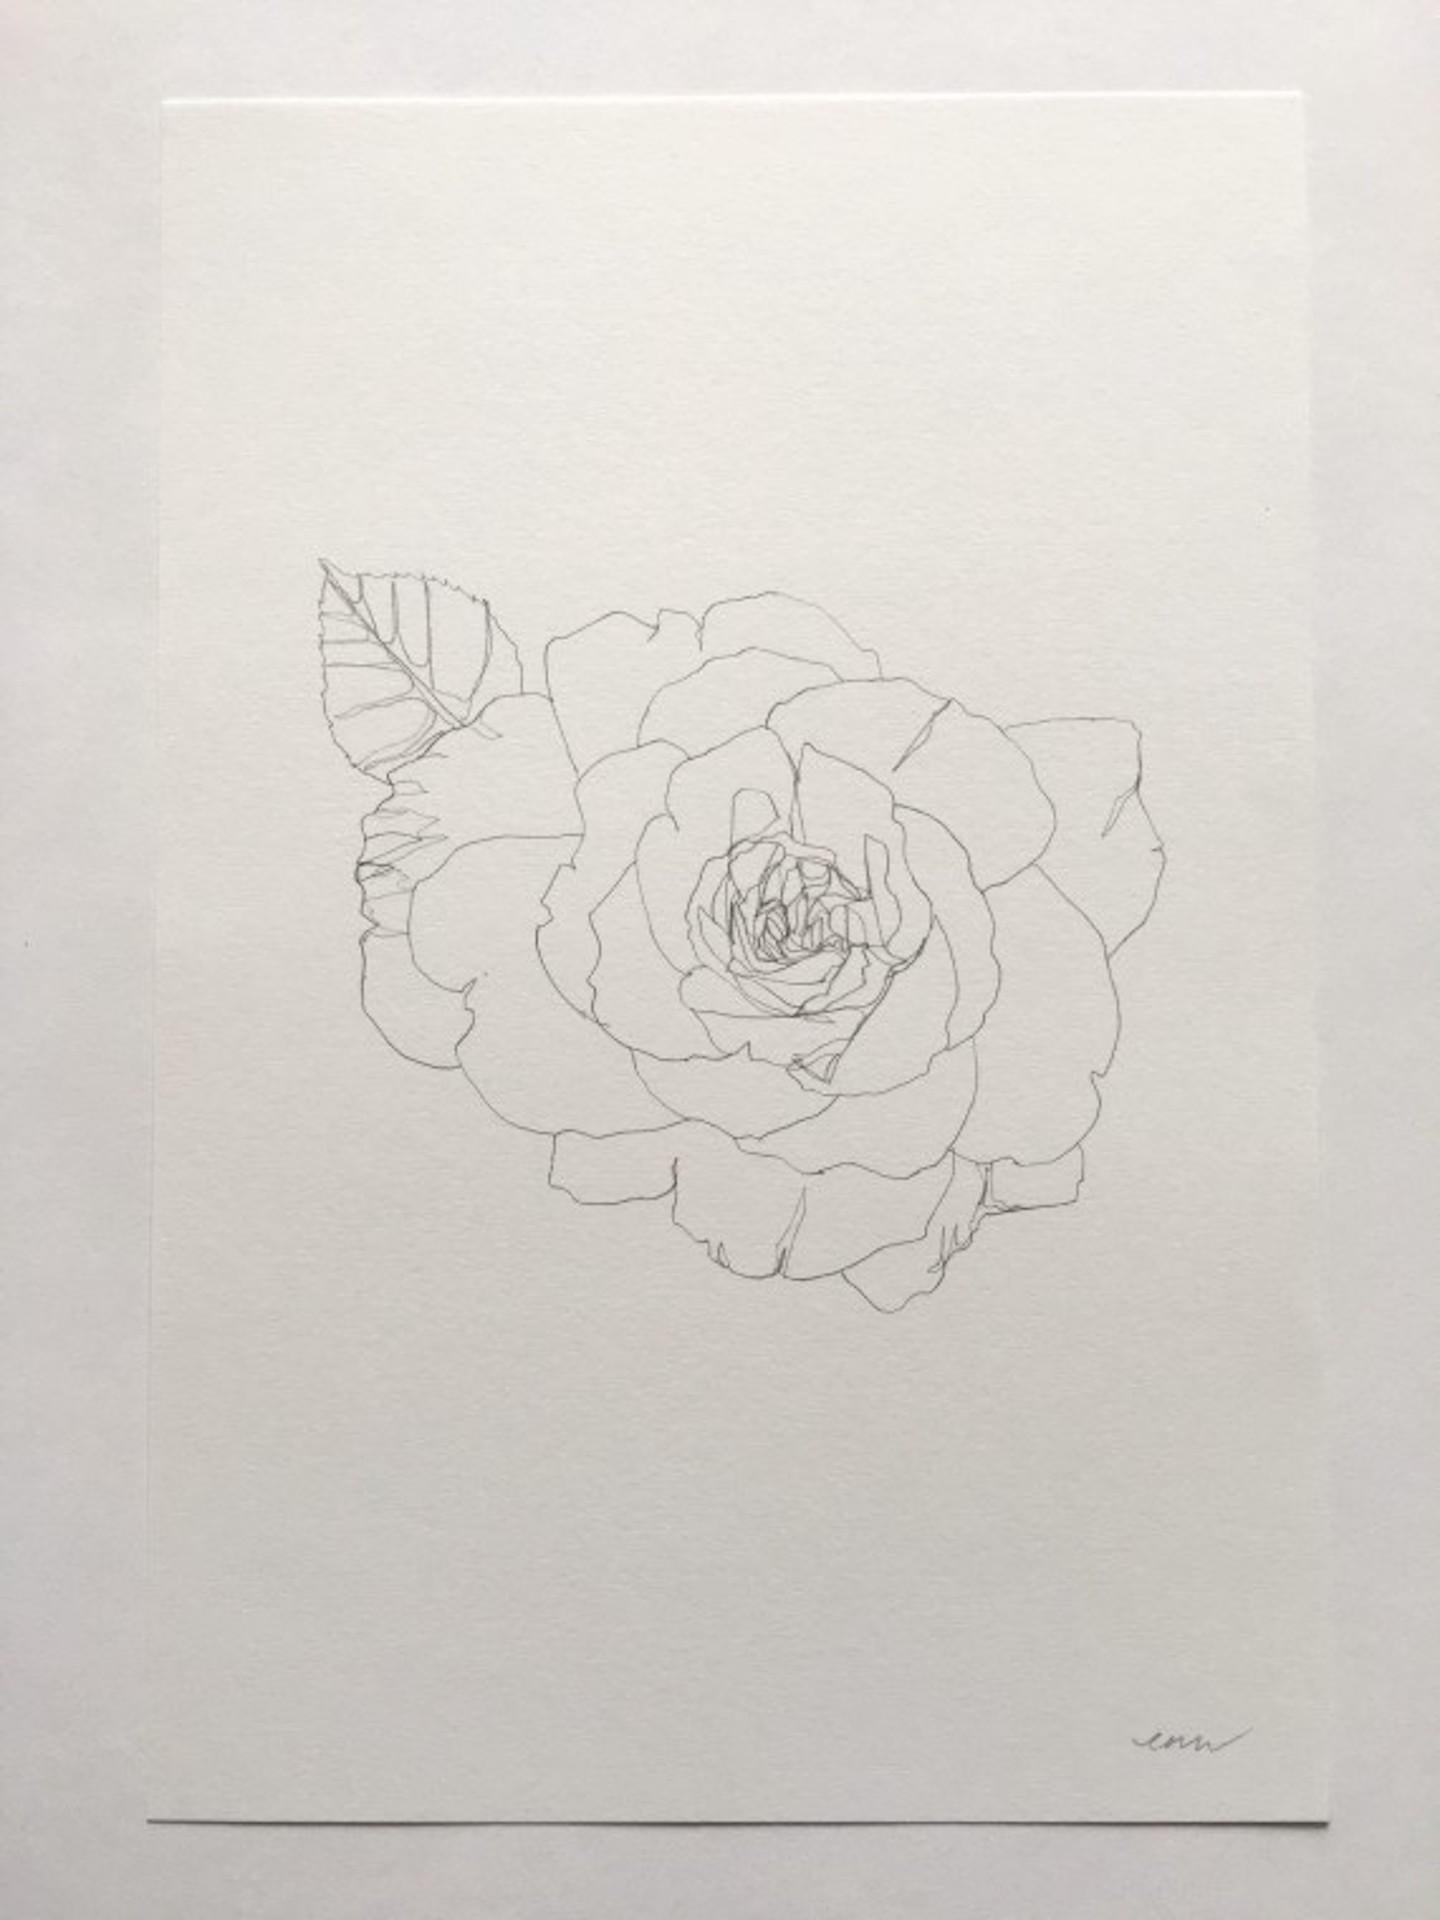 Rose 15 [2021]
original

Crayon sur papier 150 g/m²

Taille de l'image : H:30 cm x L:20 cm

Taille complète de l'œuvre non encadrée : H:30 cm x L:20 cm x P:0.01cm

Vendu sans cadre

Veuillez noter que les images insitu ne sont qu'une indication de